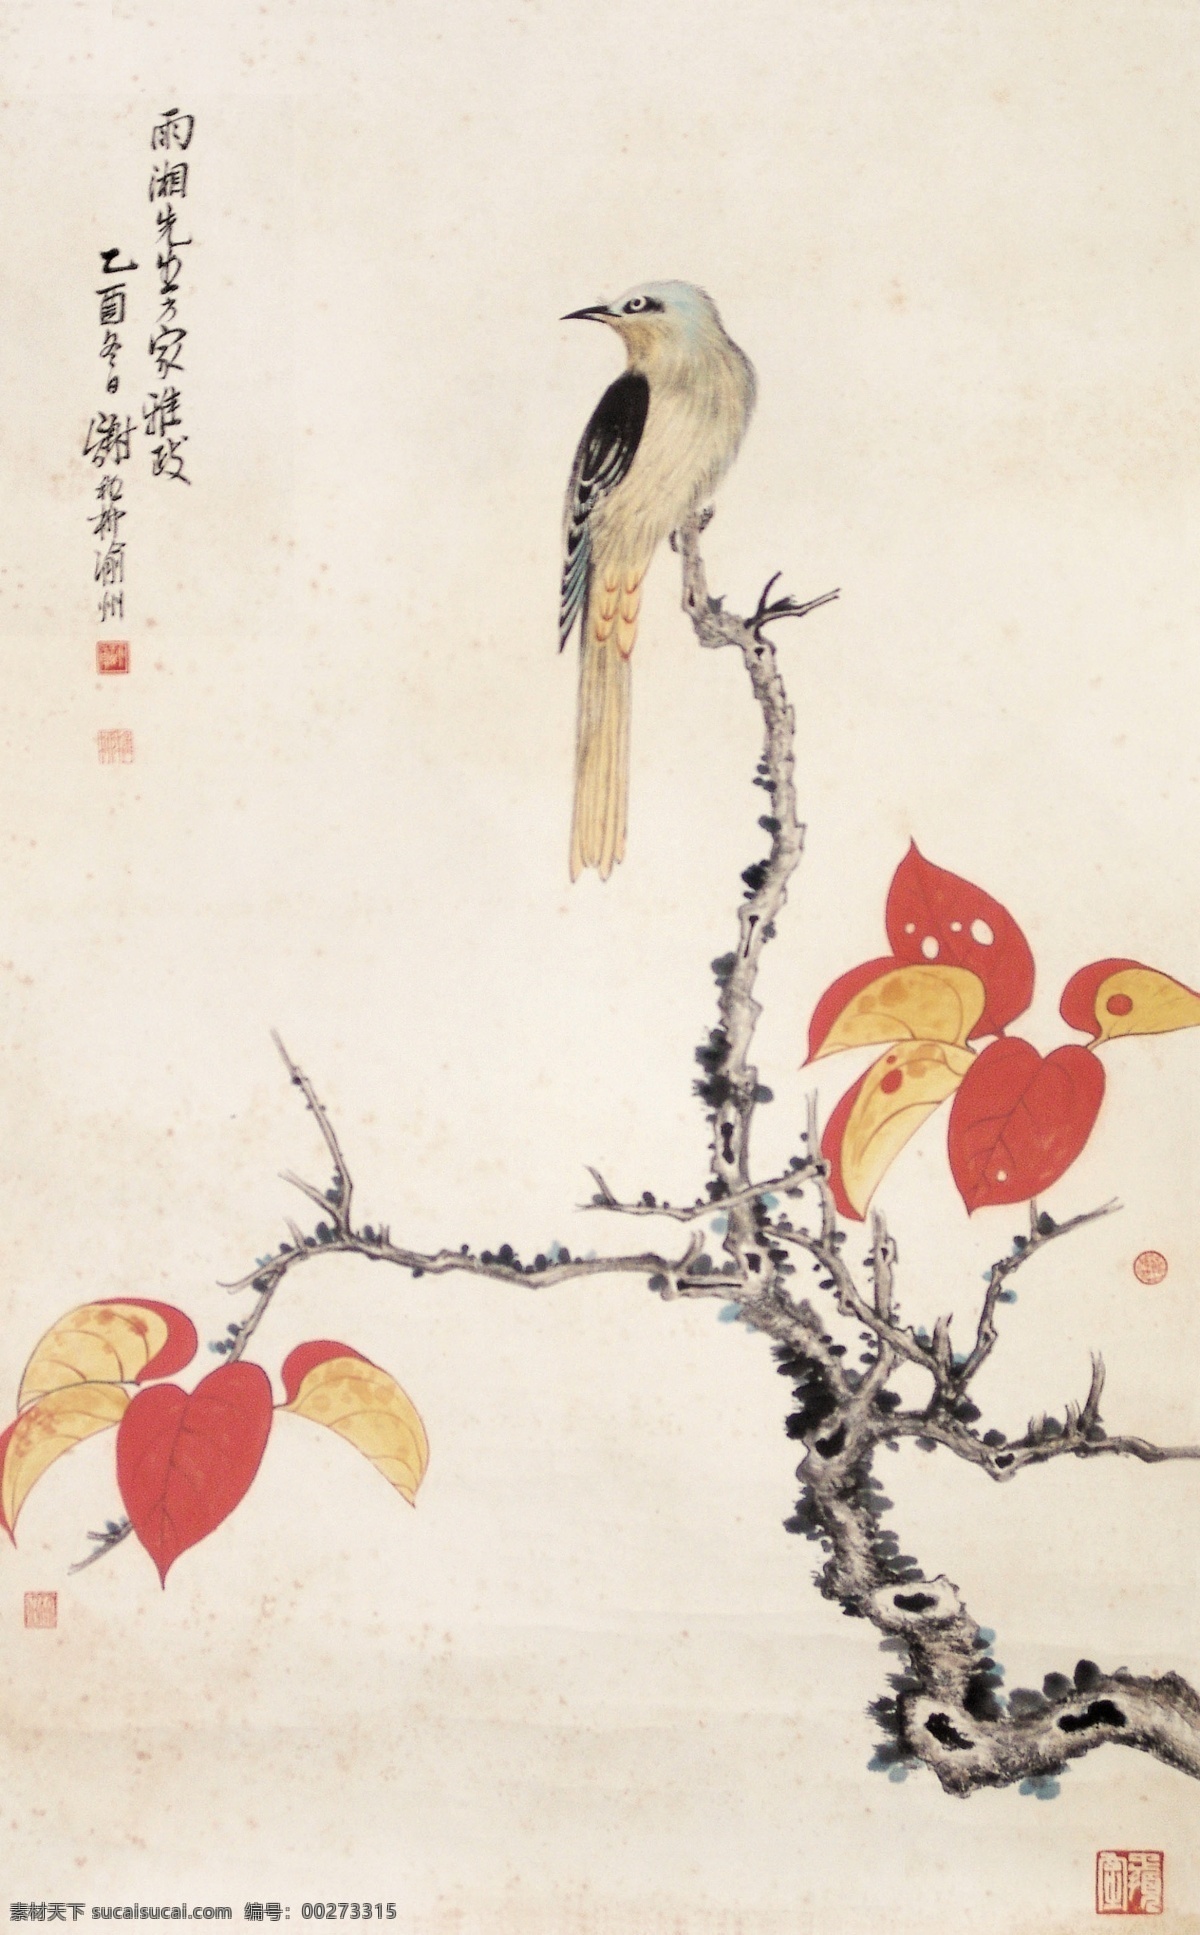 花鸟 国画 红叶 枯枝 近现代 画家 作品集 传统文化 文化艺术